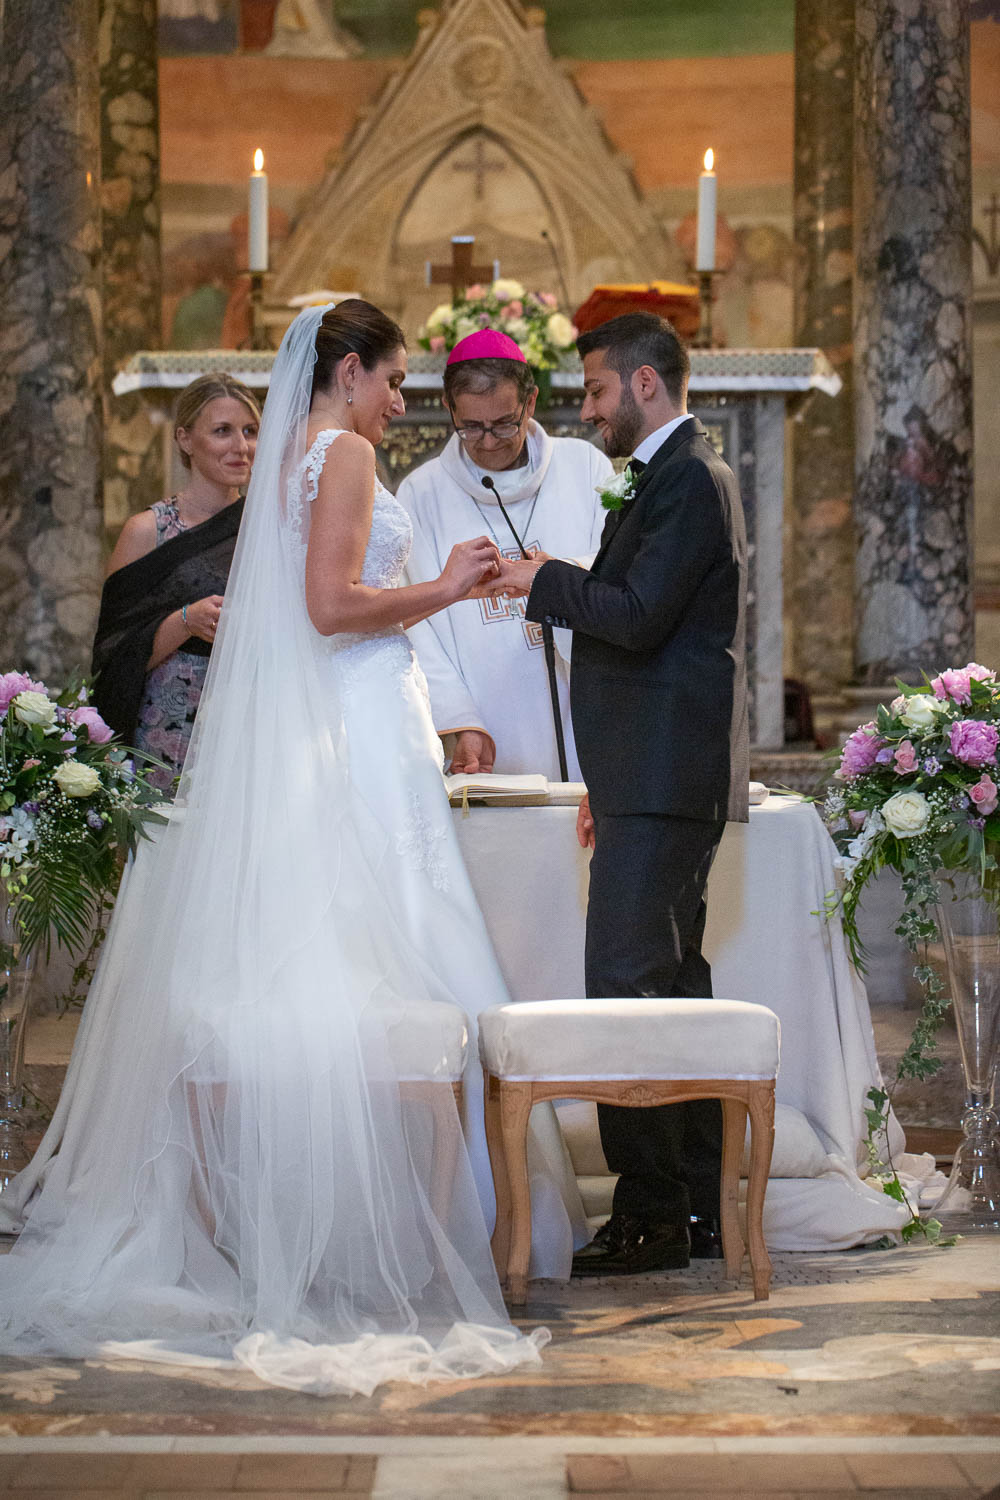 nf-Fotografo-Matrimonio-in-chiesa-Roma